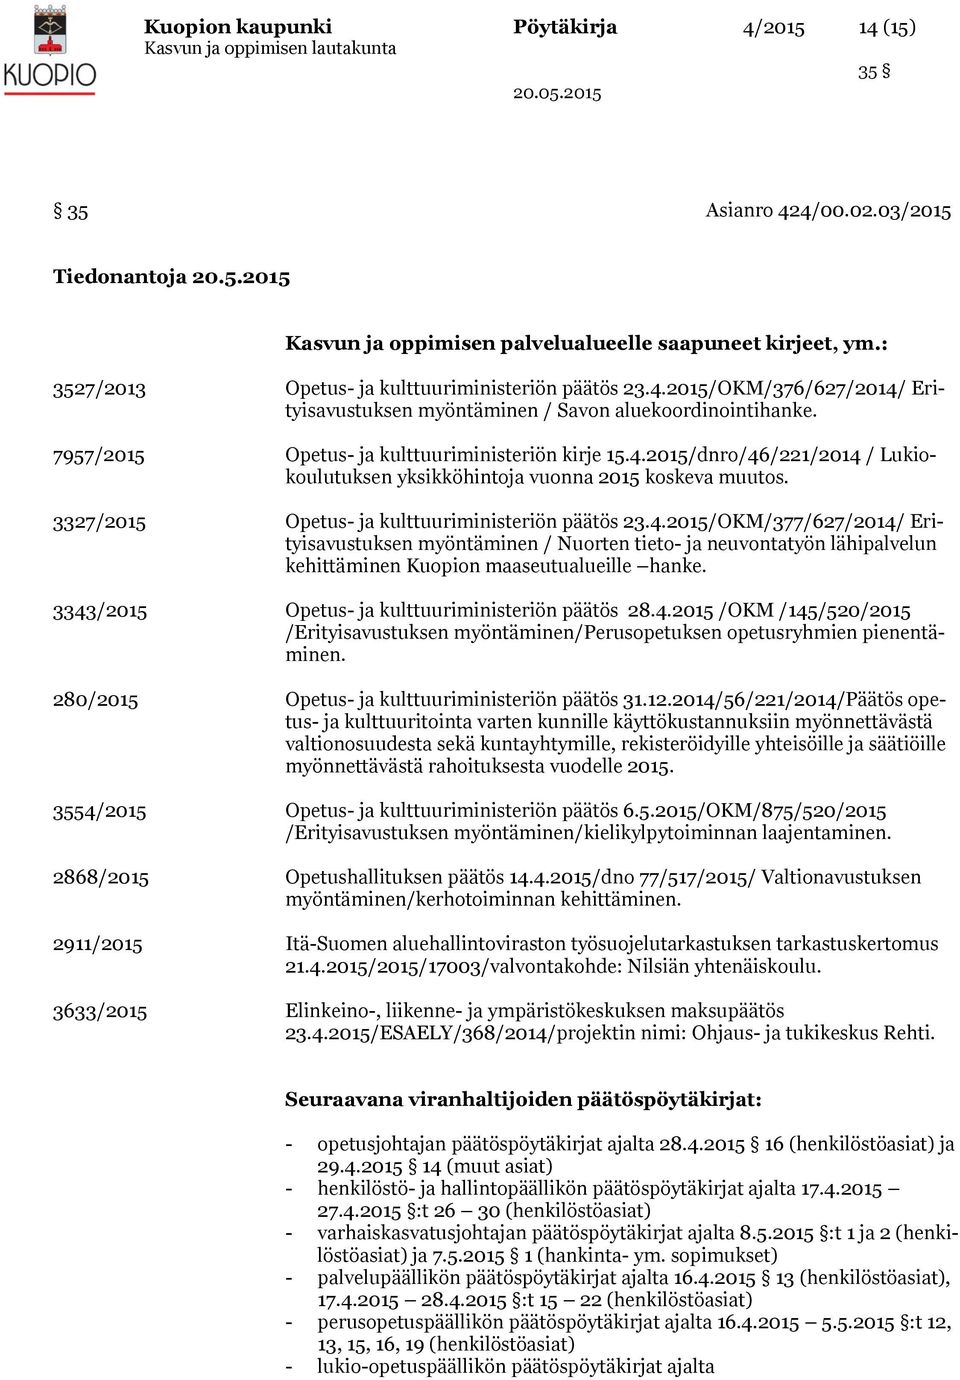 3327/2015 Opetus- ja kulttuuriministeriön päätös 23.4.2015/OKM/377/627/2014/ Erityisavustuksen myöntäminen / Nuorten tieto- ja neuvontatyön lähipalvelun kehittäminen Kuopion maaseutualueille hanke.